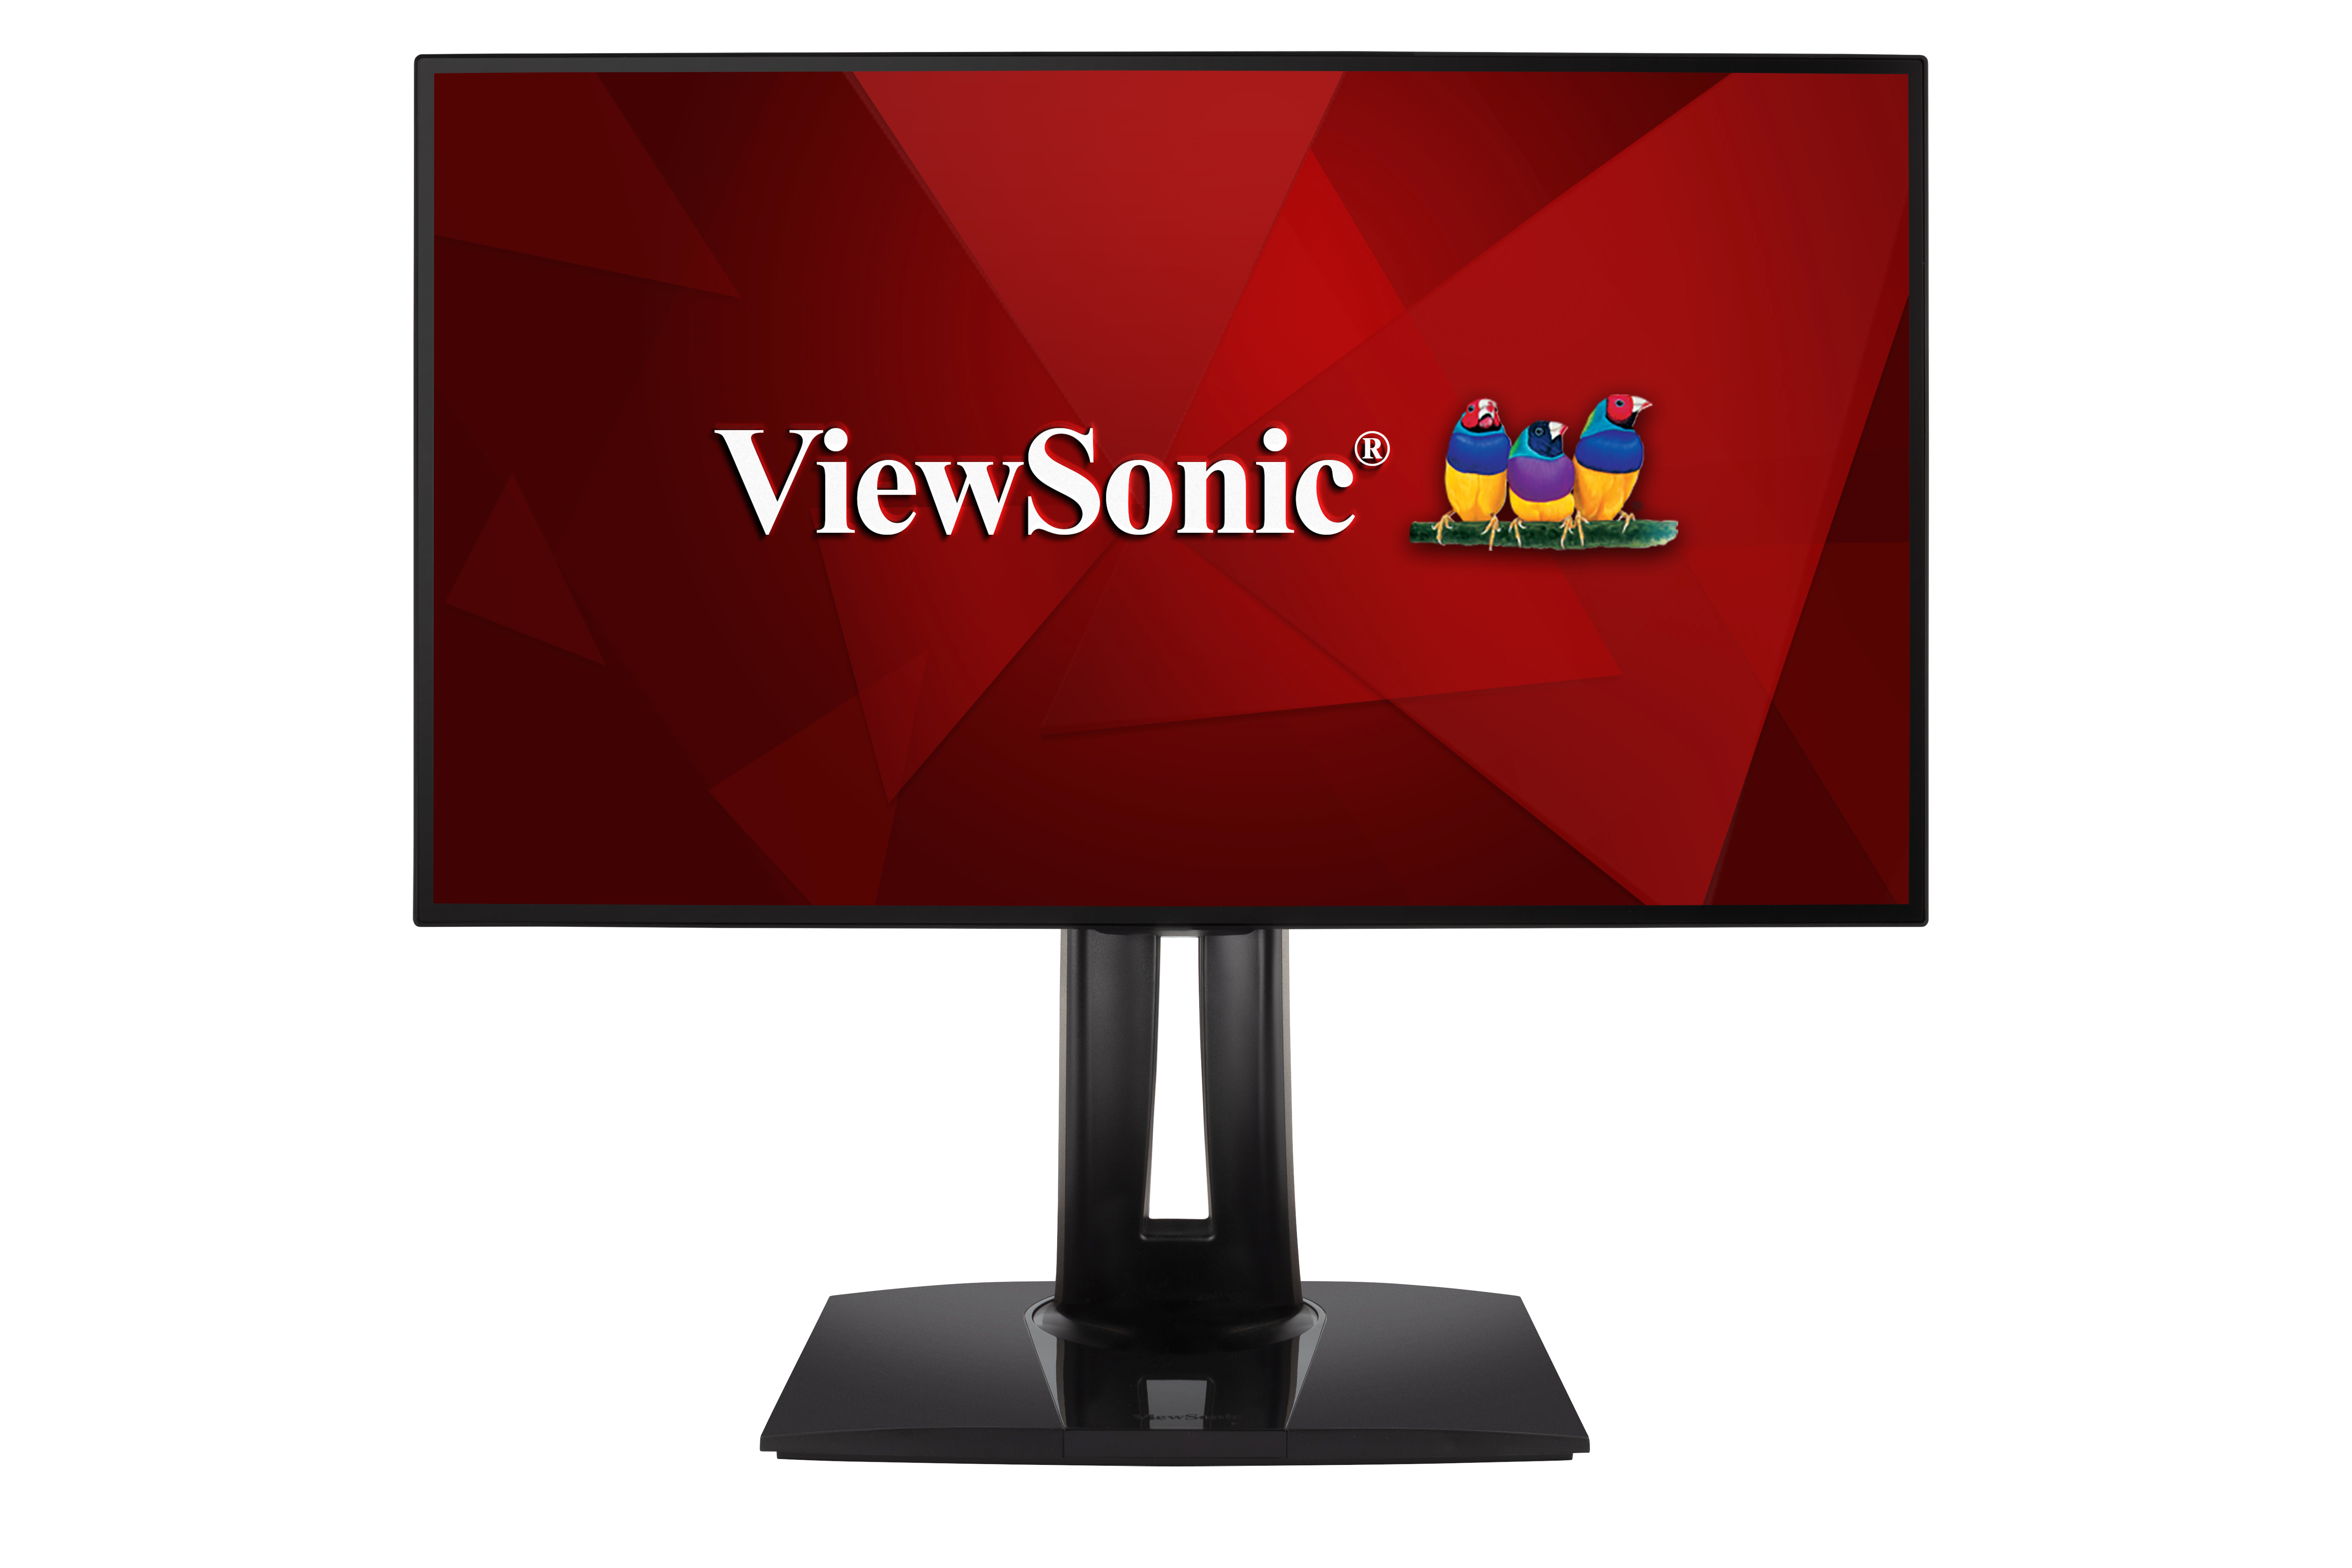 Viewsonic VP Series VP2458 LED display